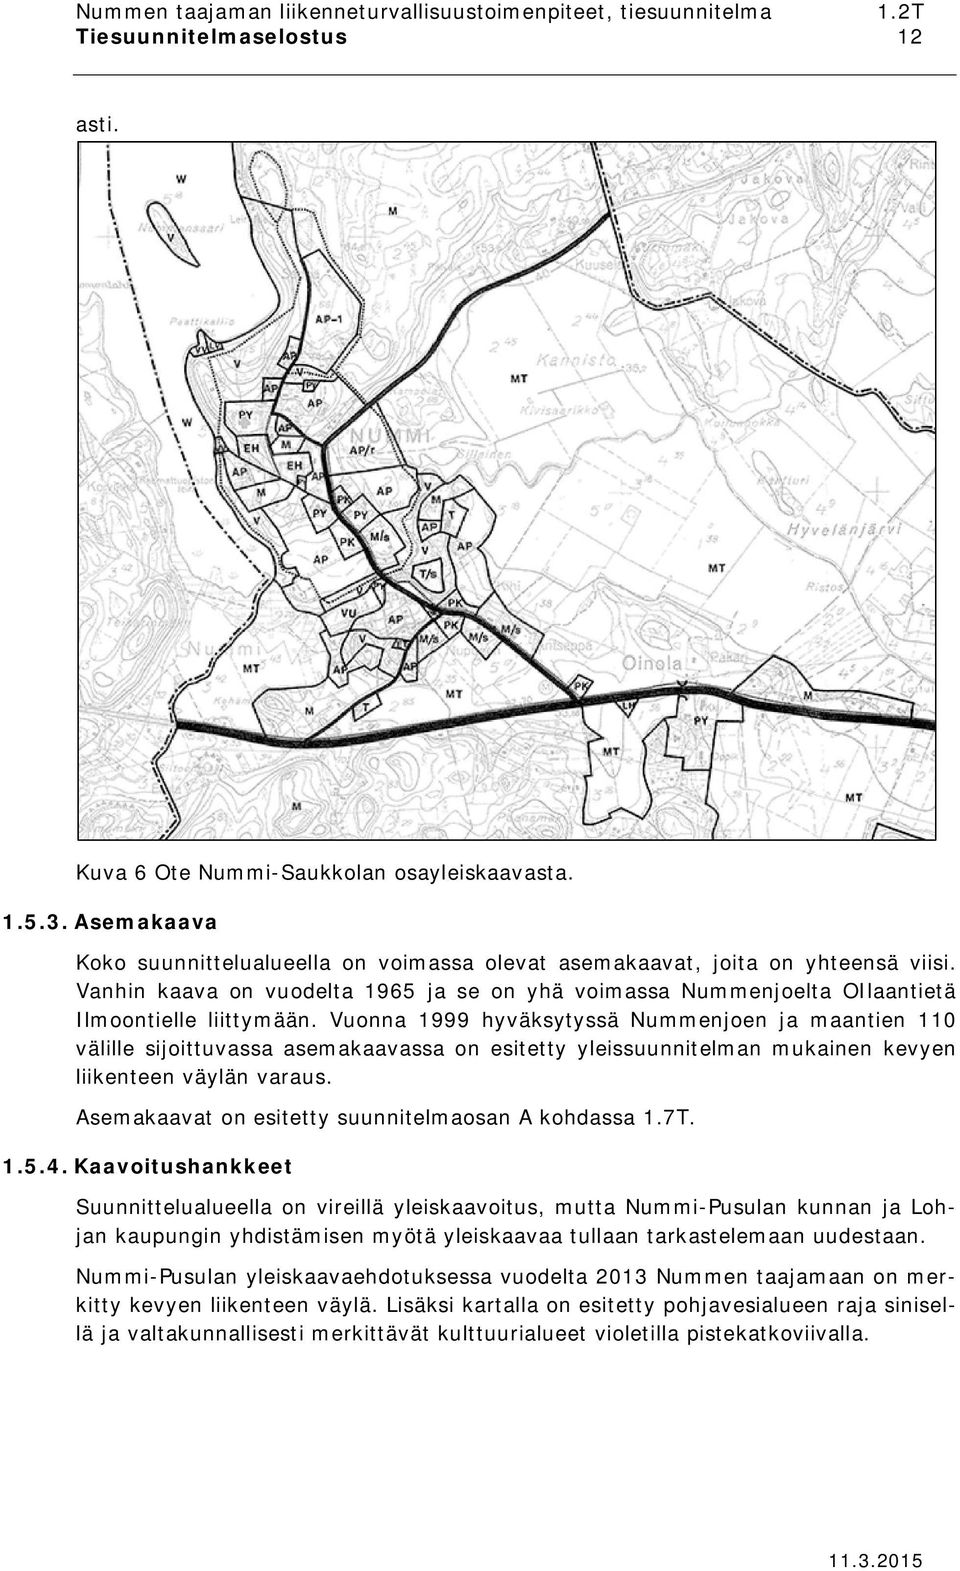 Vuonna 1999 hyväksytyssä Nummenjoen ja maantien 110 välille sijoittuvassa asemakaavassa on esitetty yleissuunnitelman mukainen kevyen liikenteen väylän varaus.